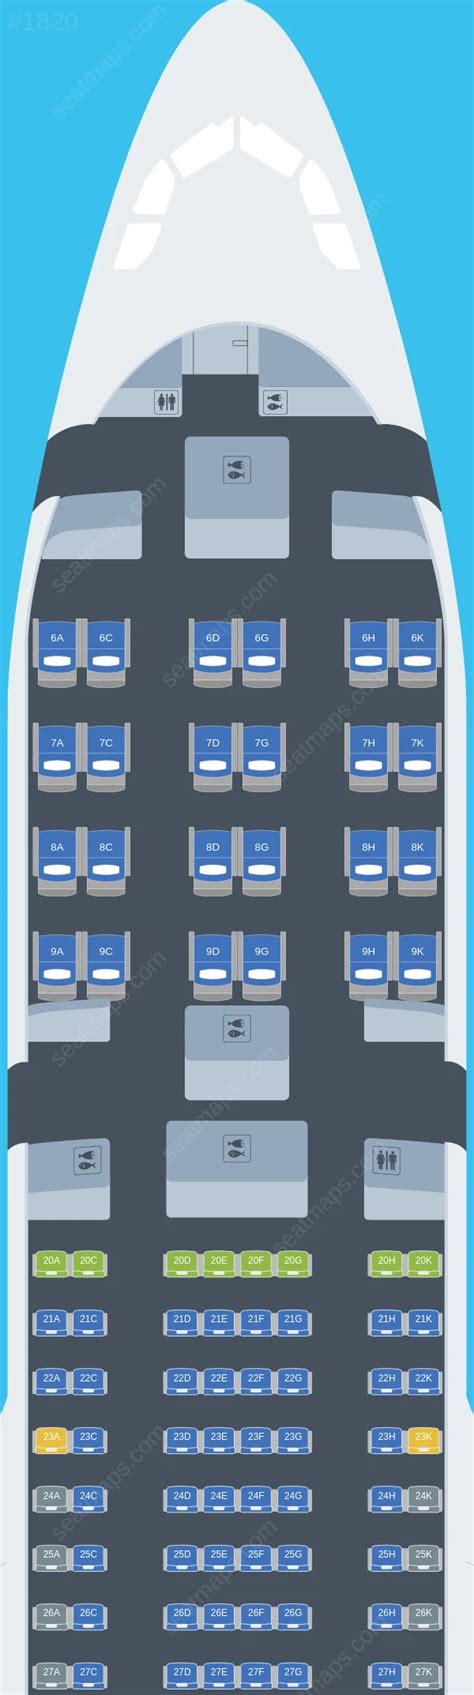 Seat Map Eva Air Airbus A Seatmaestro Porn Sex Picture